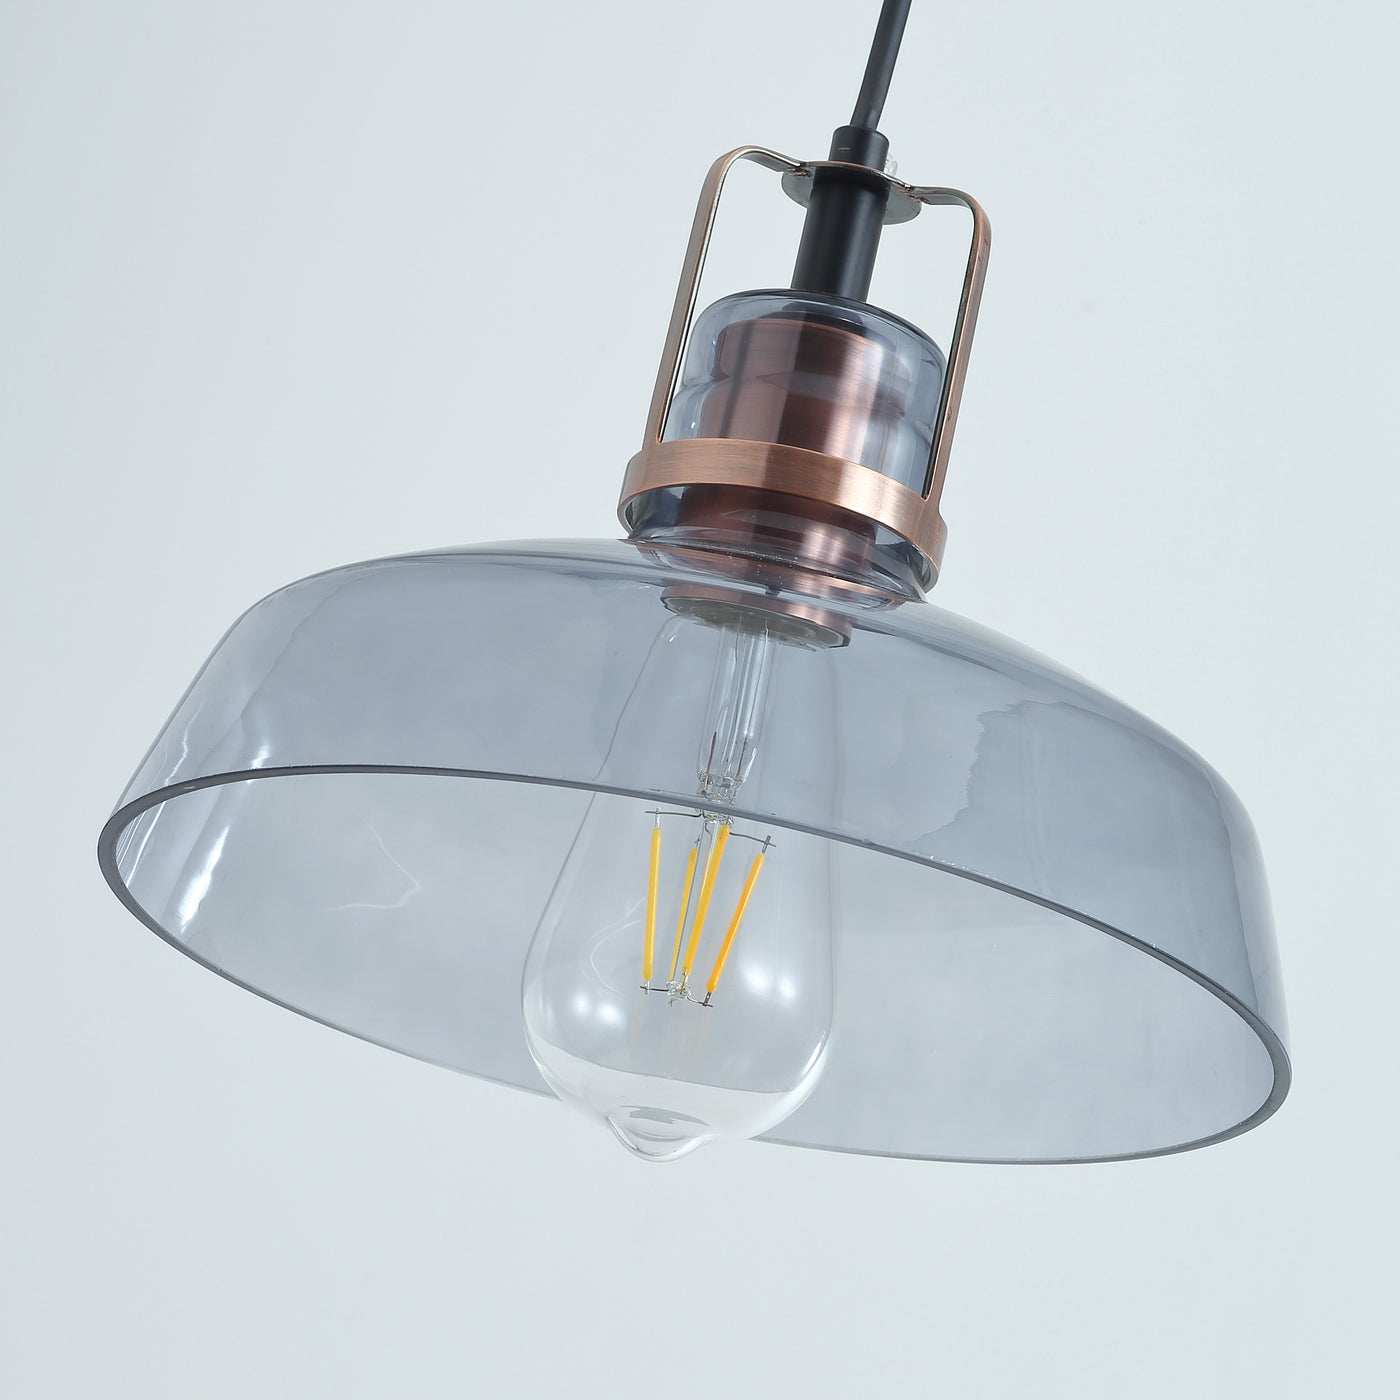 1-Light Bowl Shade Glass Pendant Lighting